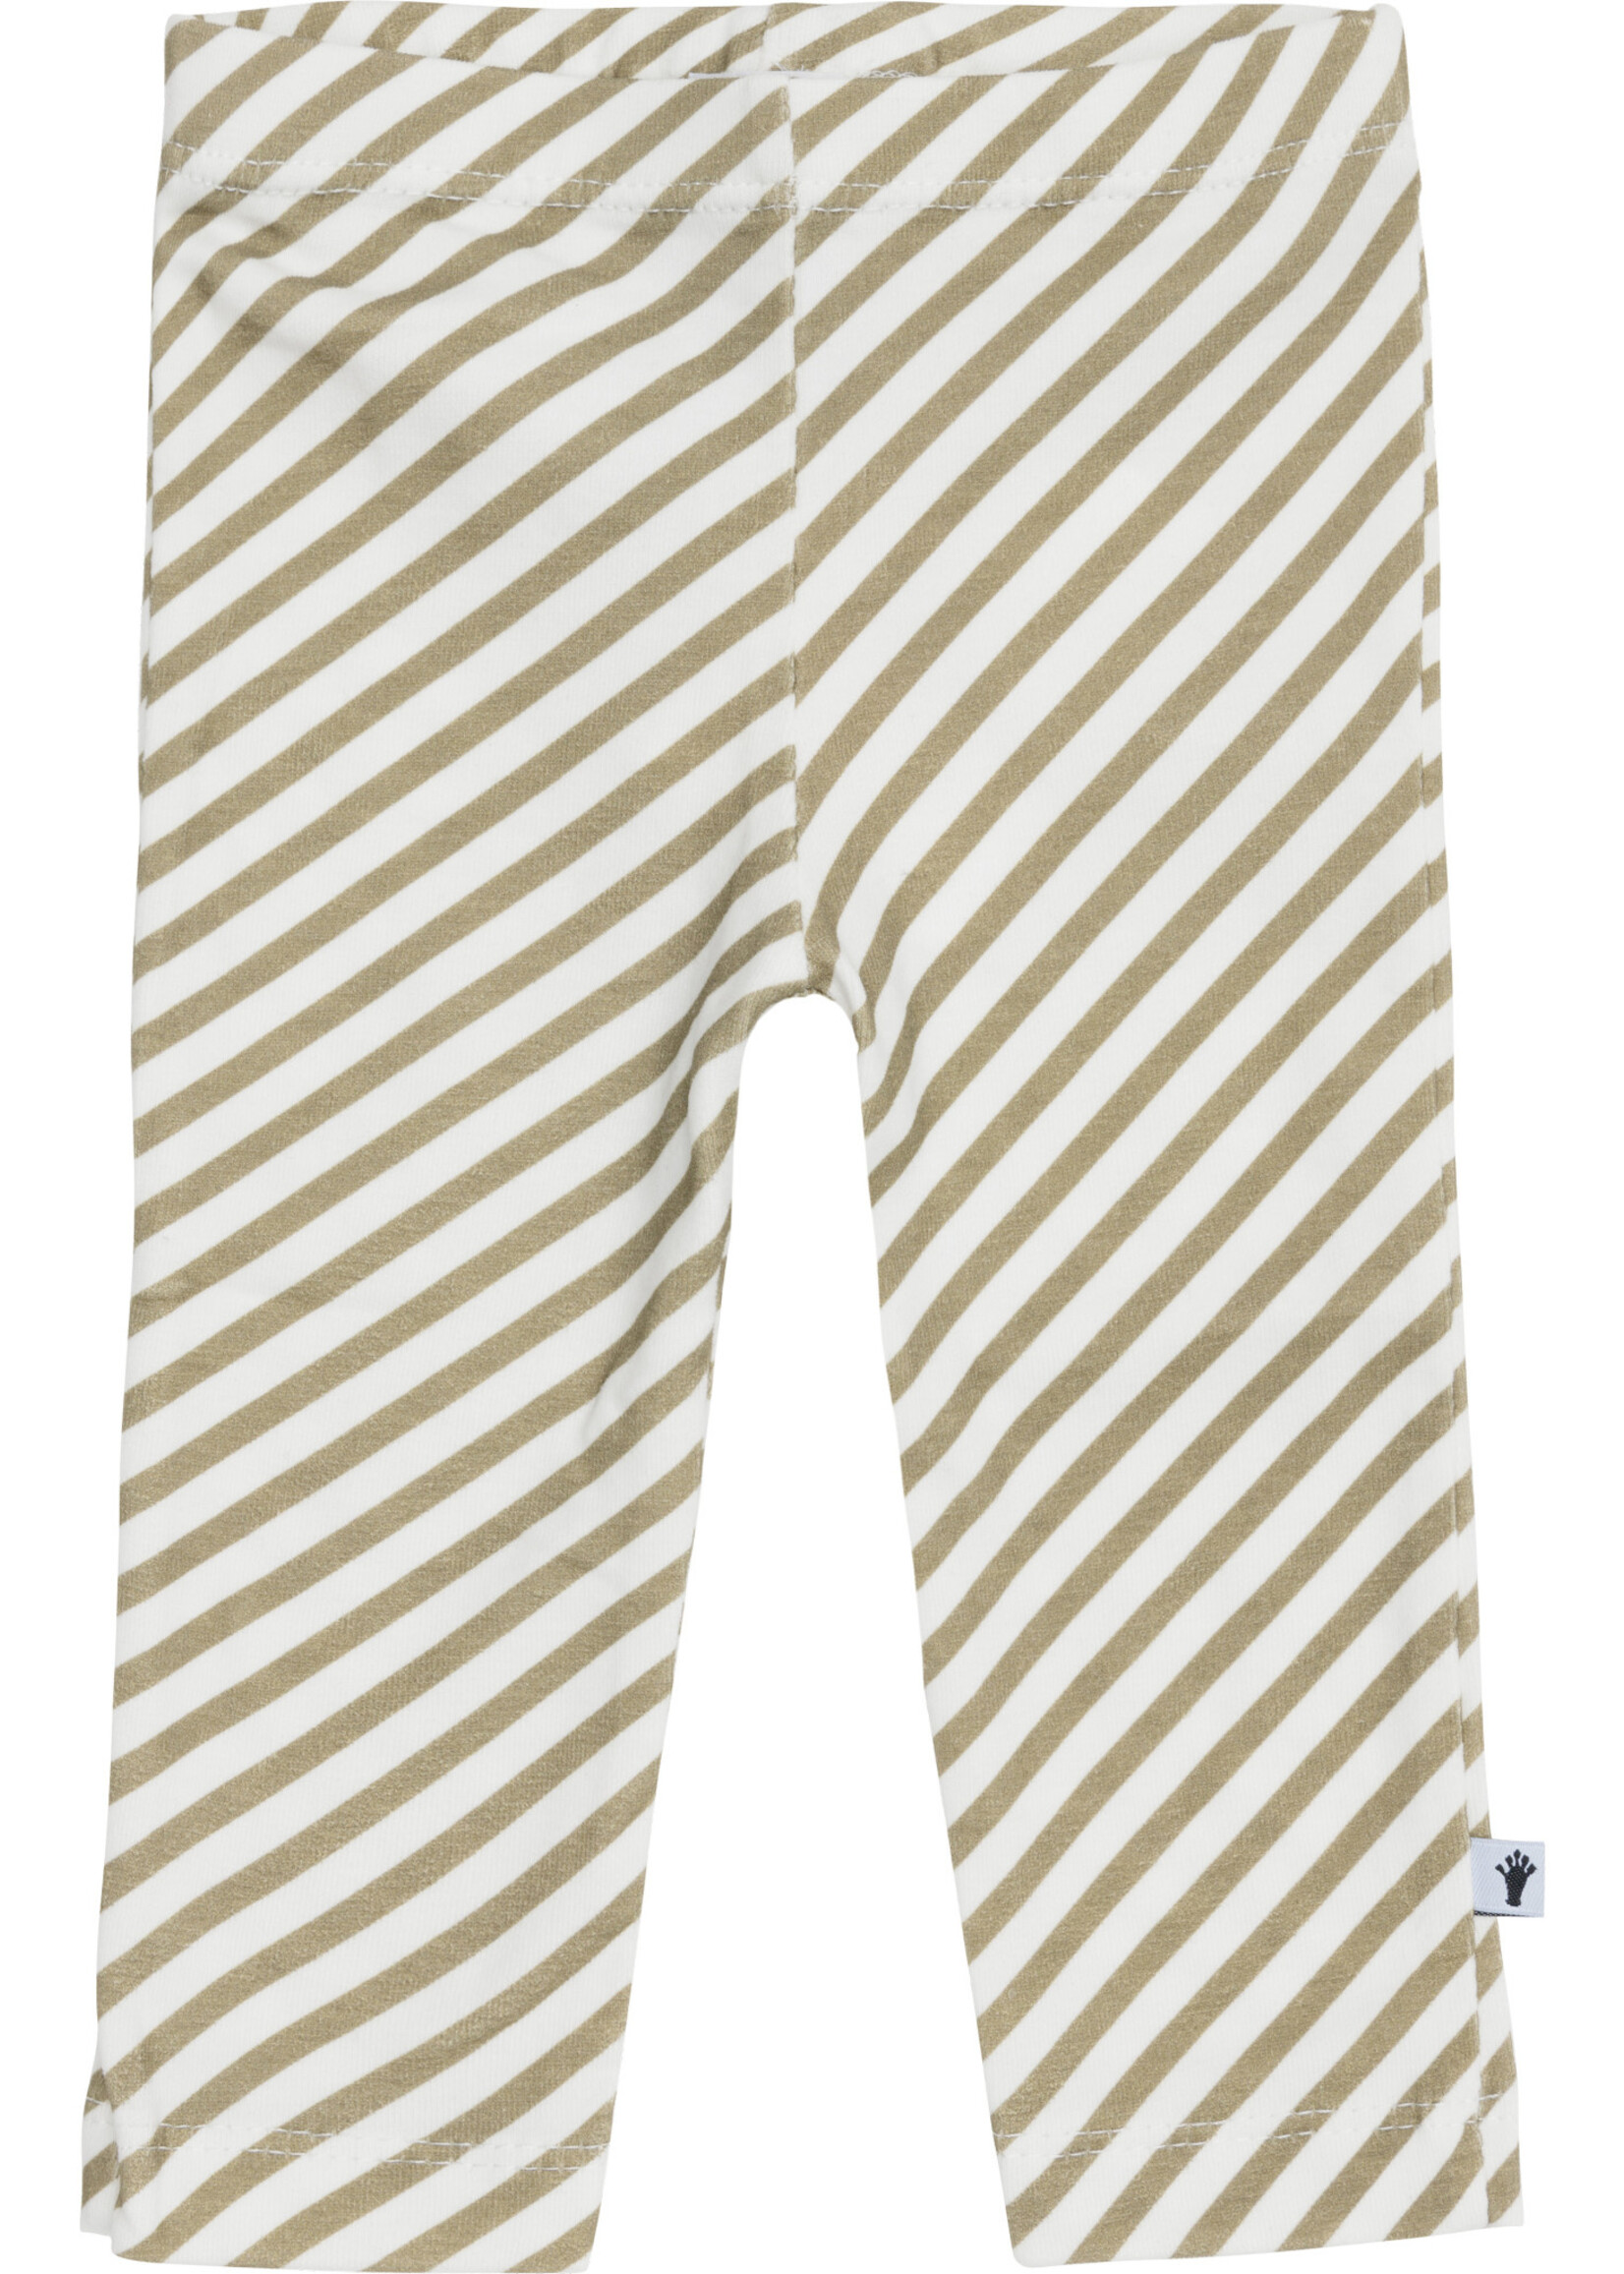 Klein Klein - legging stripe off white / twill